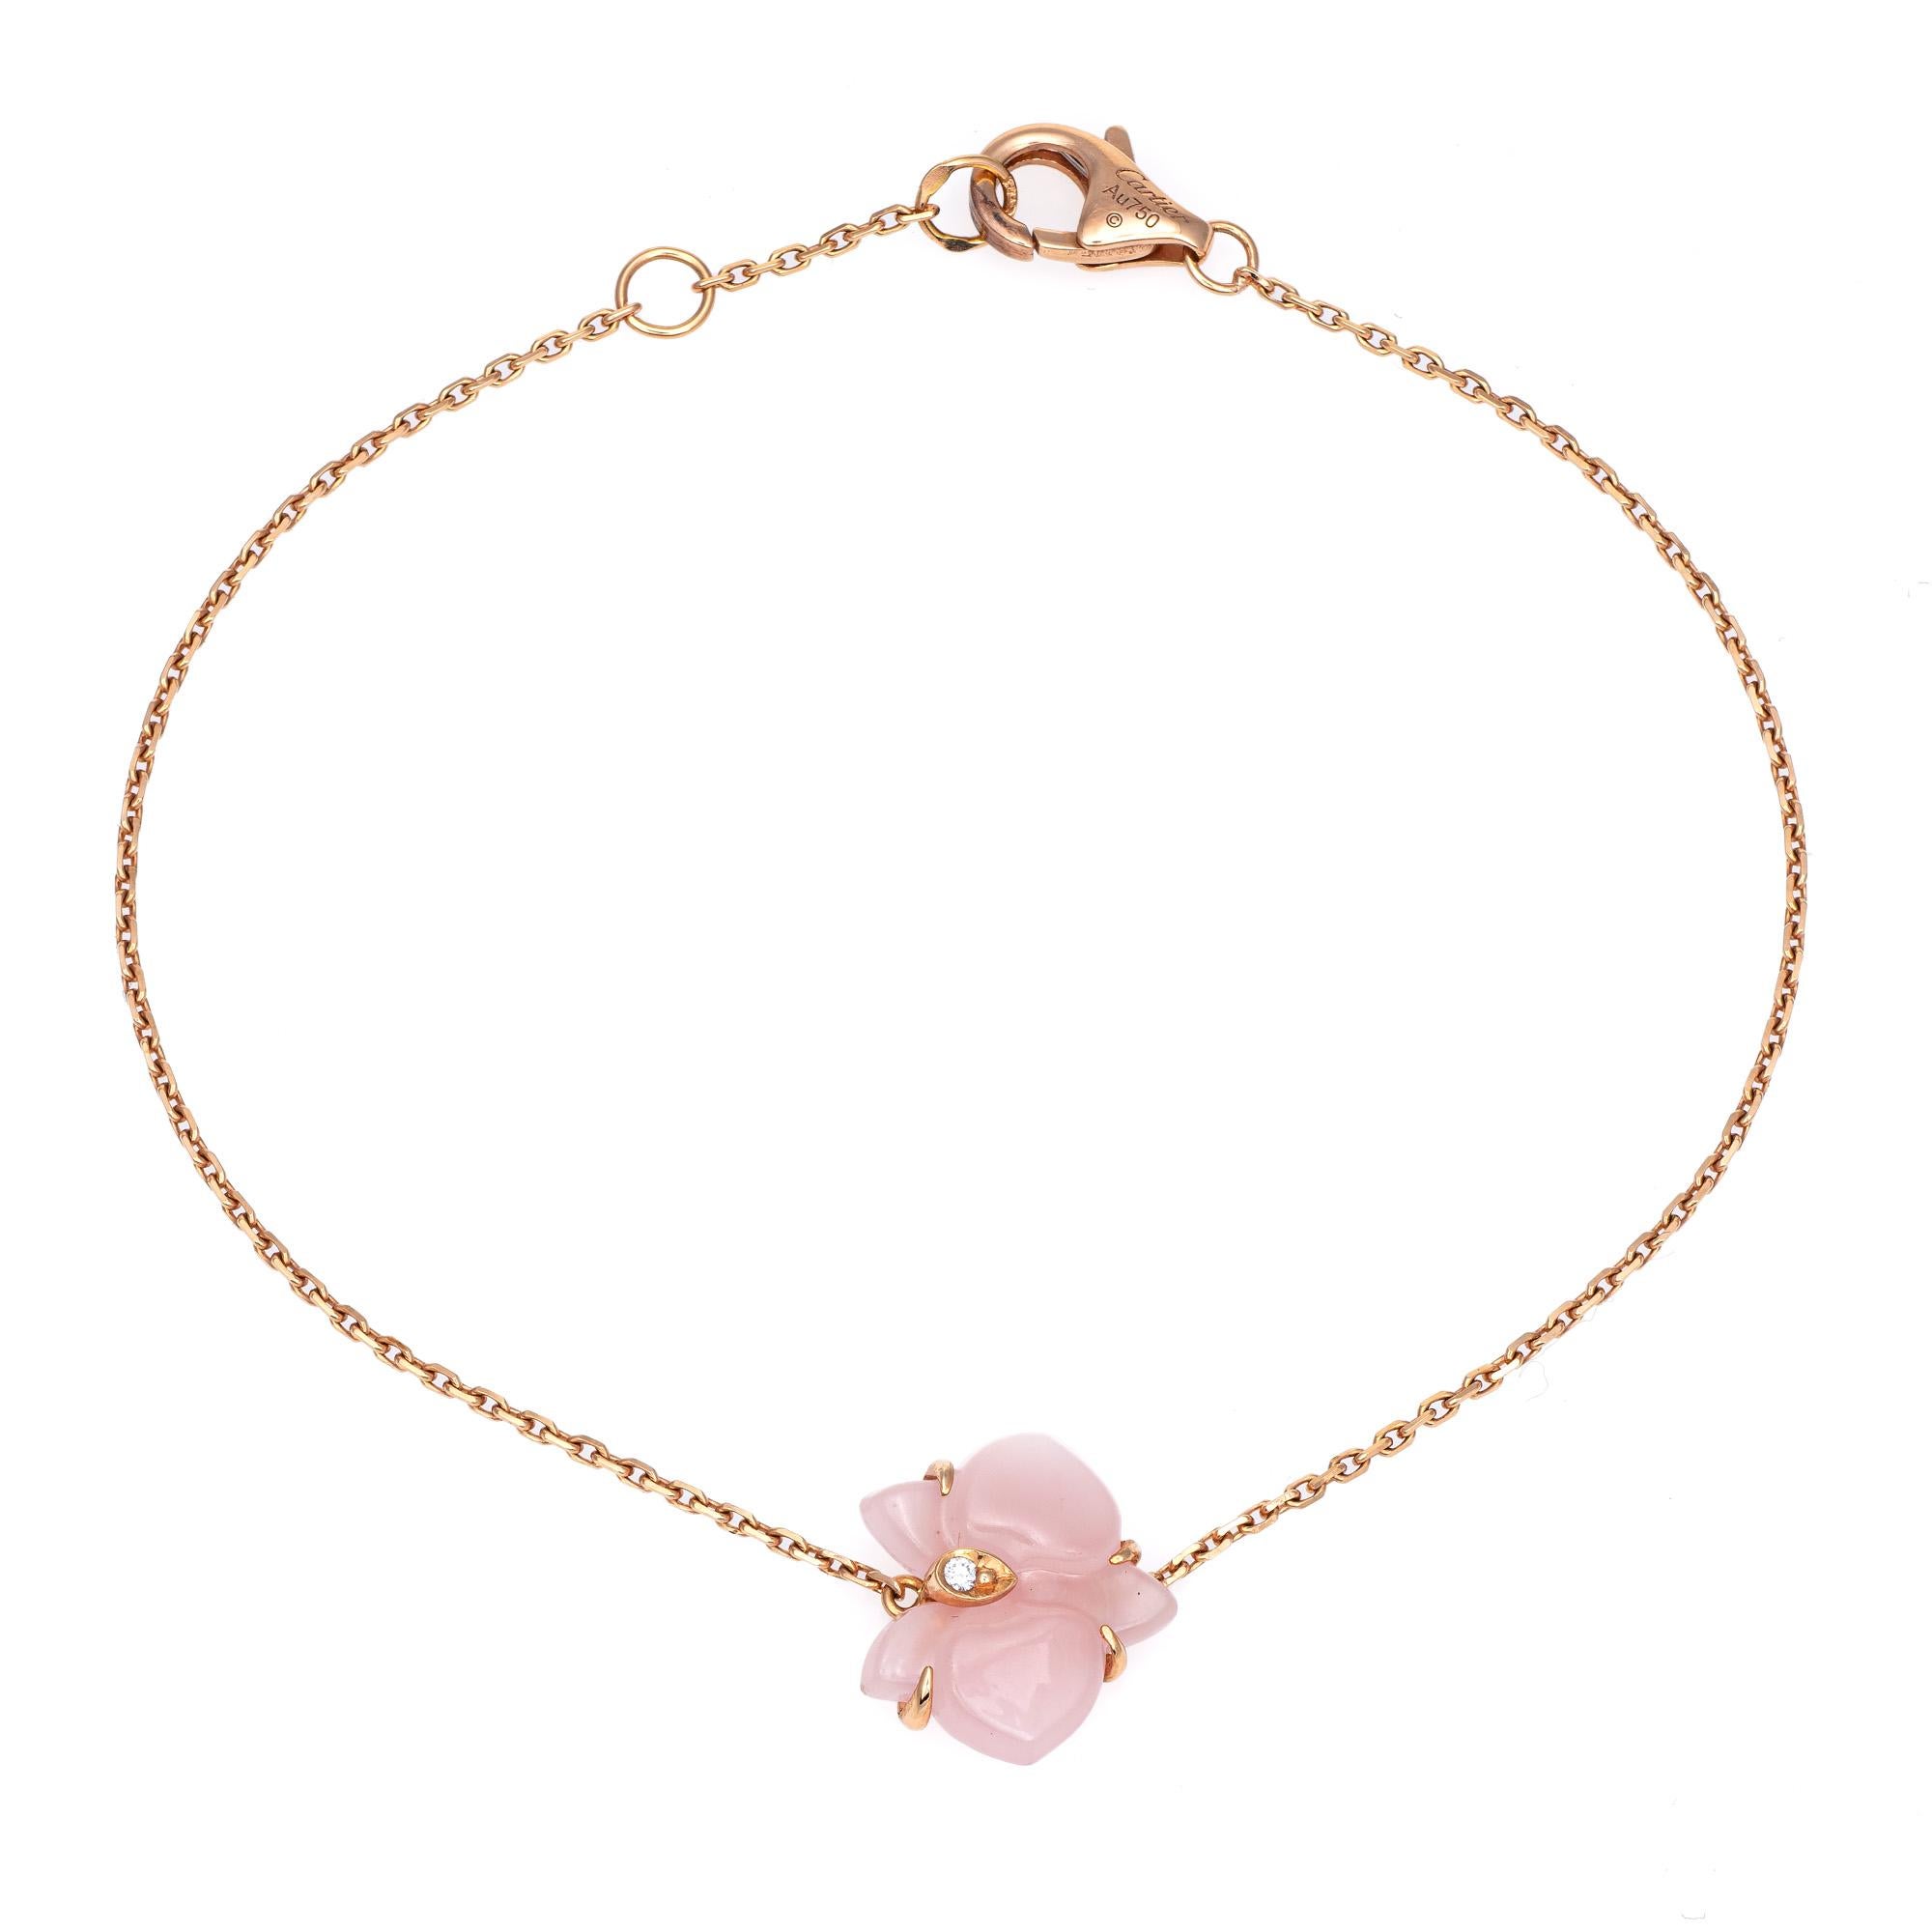 Taille ronde Caresse D'Orchidees Par Cartier Bracelet succession en or 18 carats avec calcédoine rose et diamants